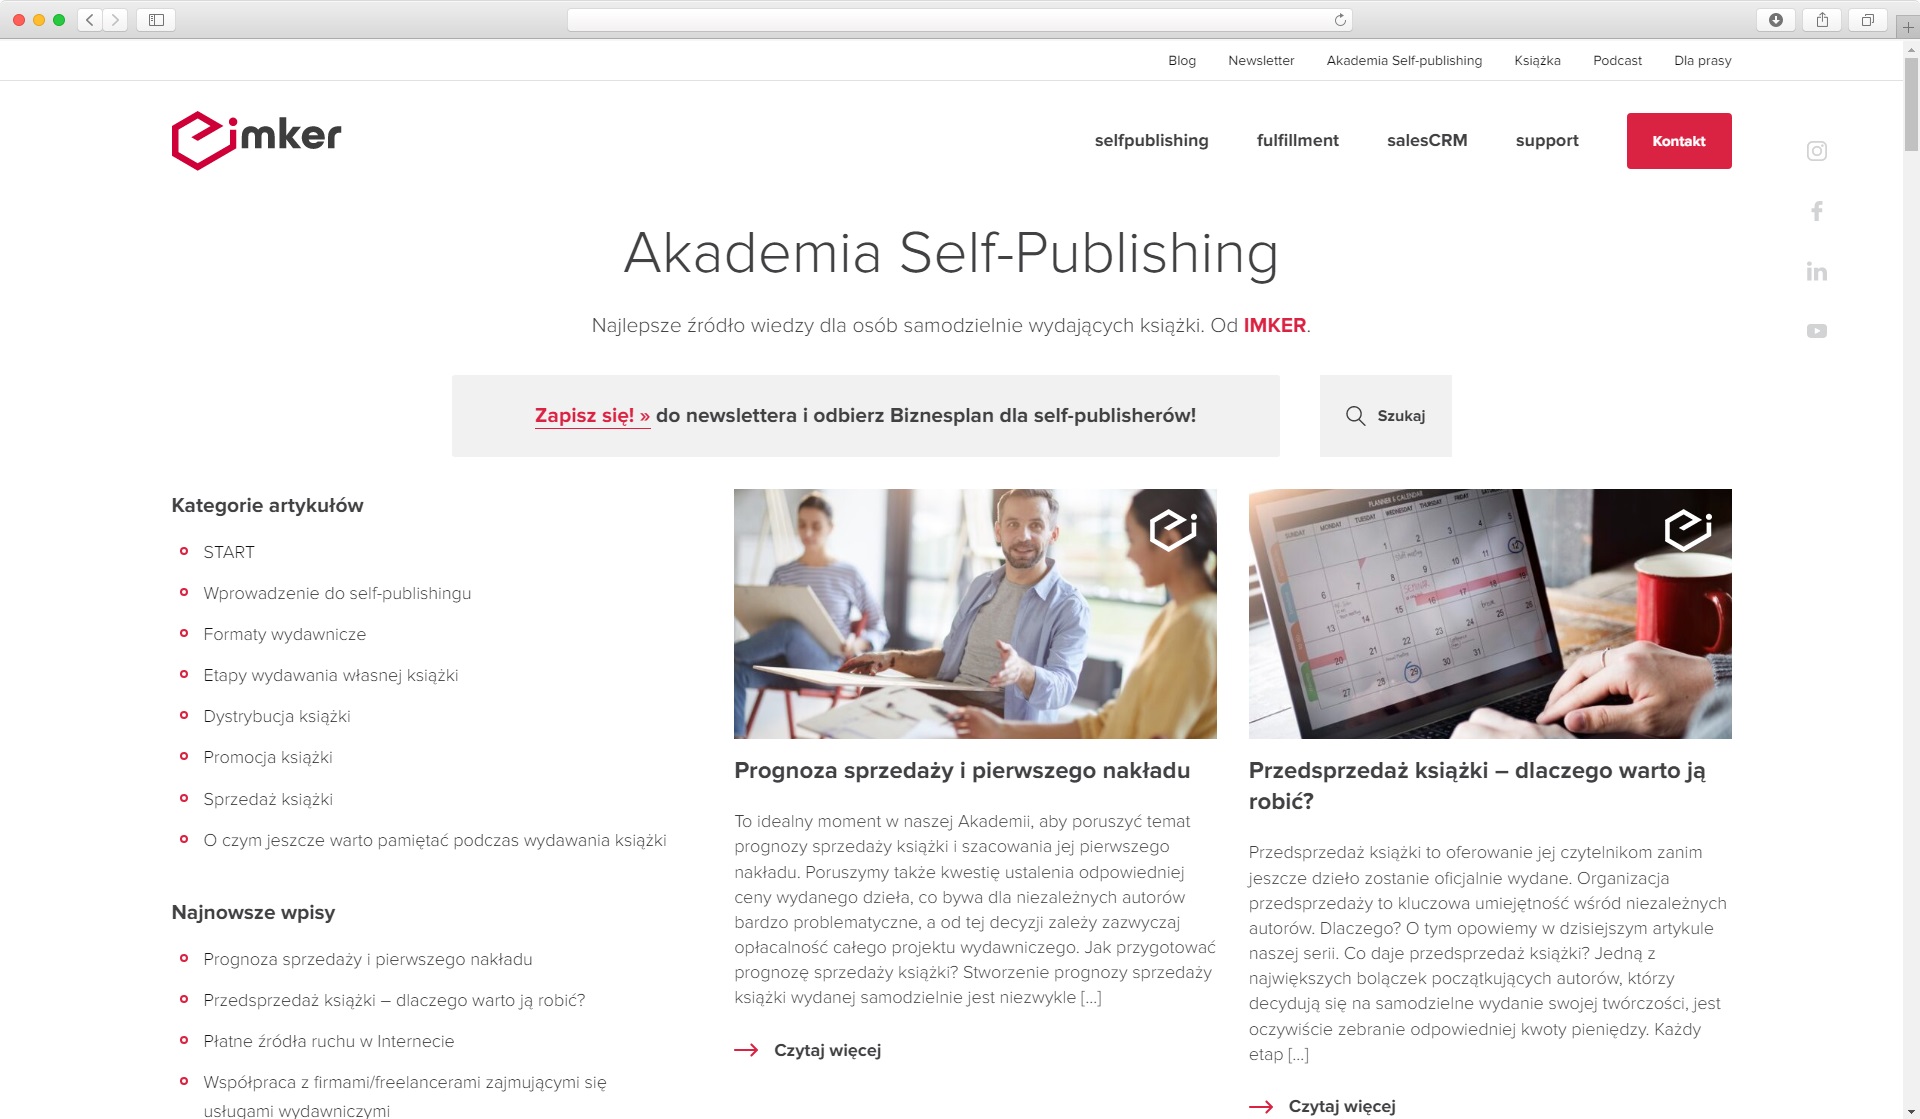 pillar page - Akademia Self-Publishing Imker